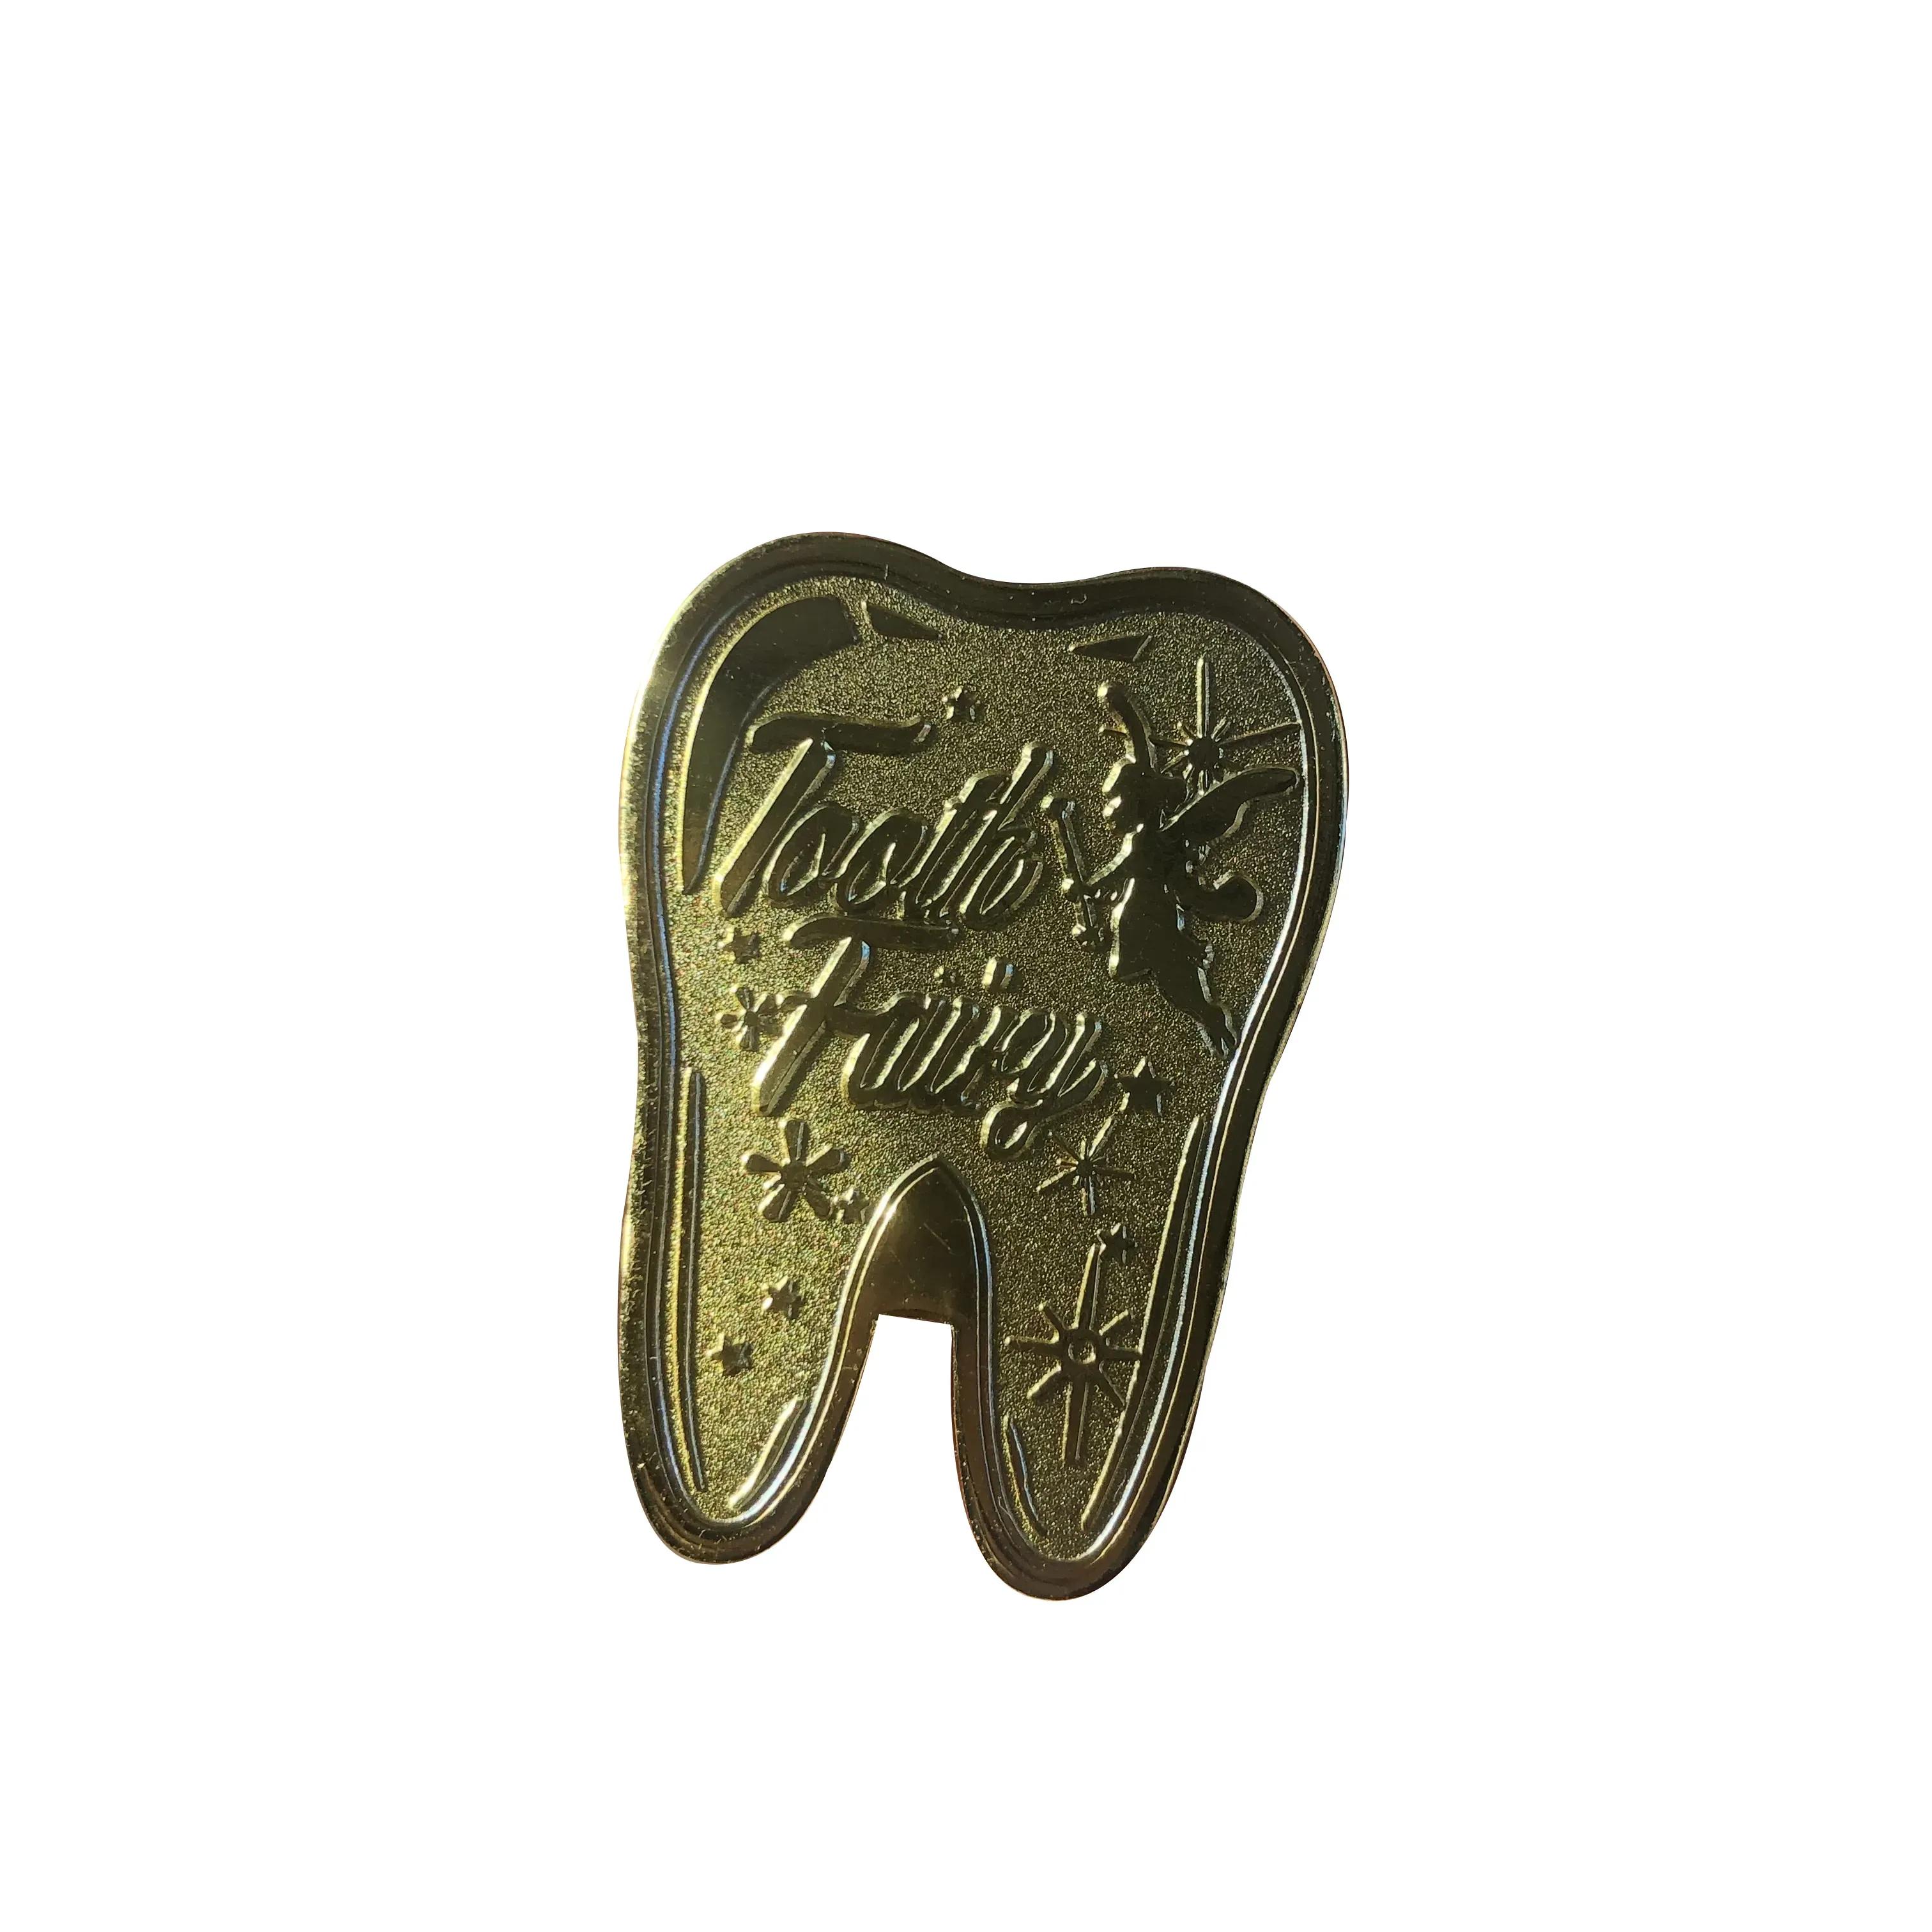 Artesanato em aço inoxidável/alumínio presente moeda comemorativa aeroespacial americana fada do dente